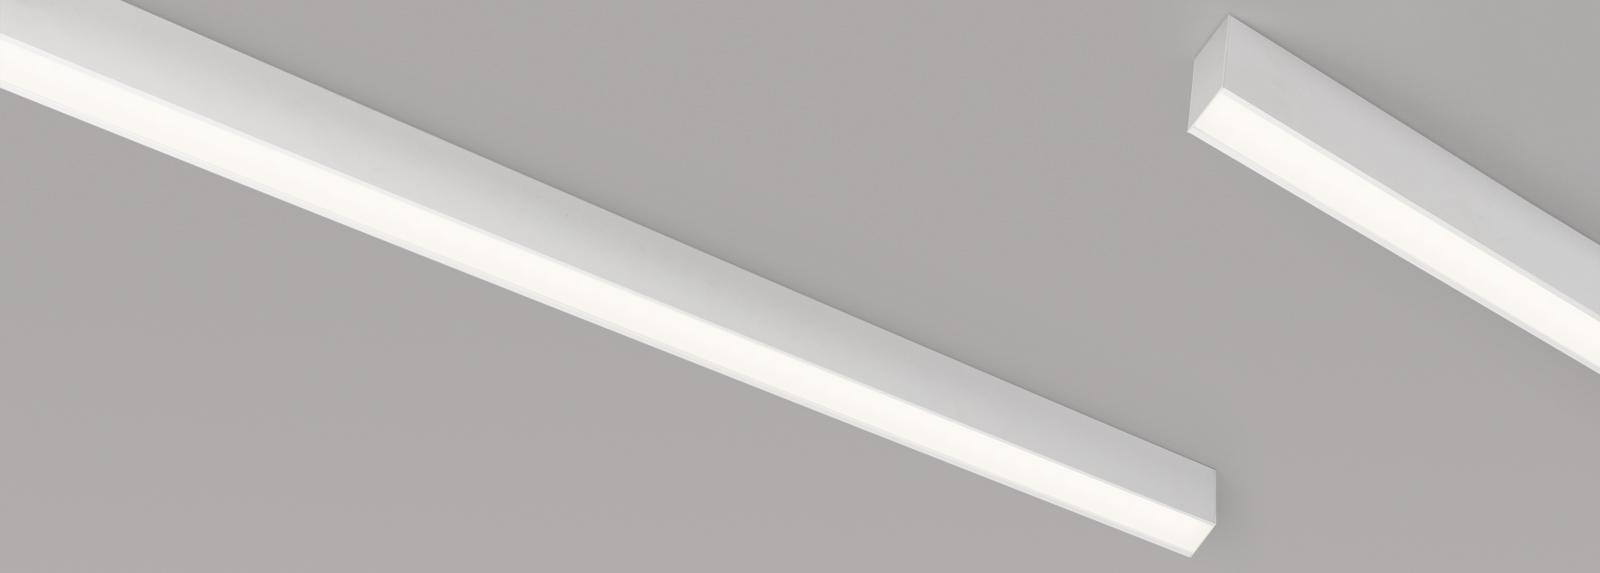 TIRET 300 | Oberflächenmontiert Linearleuchte Downlights